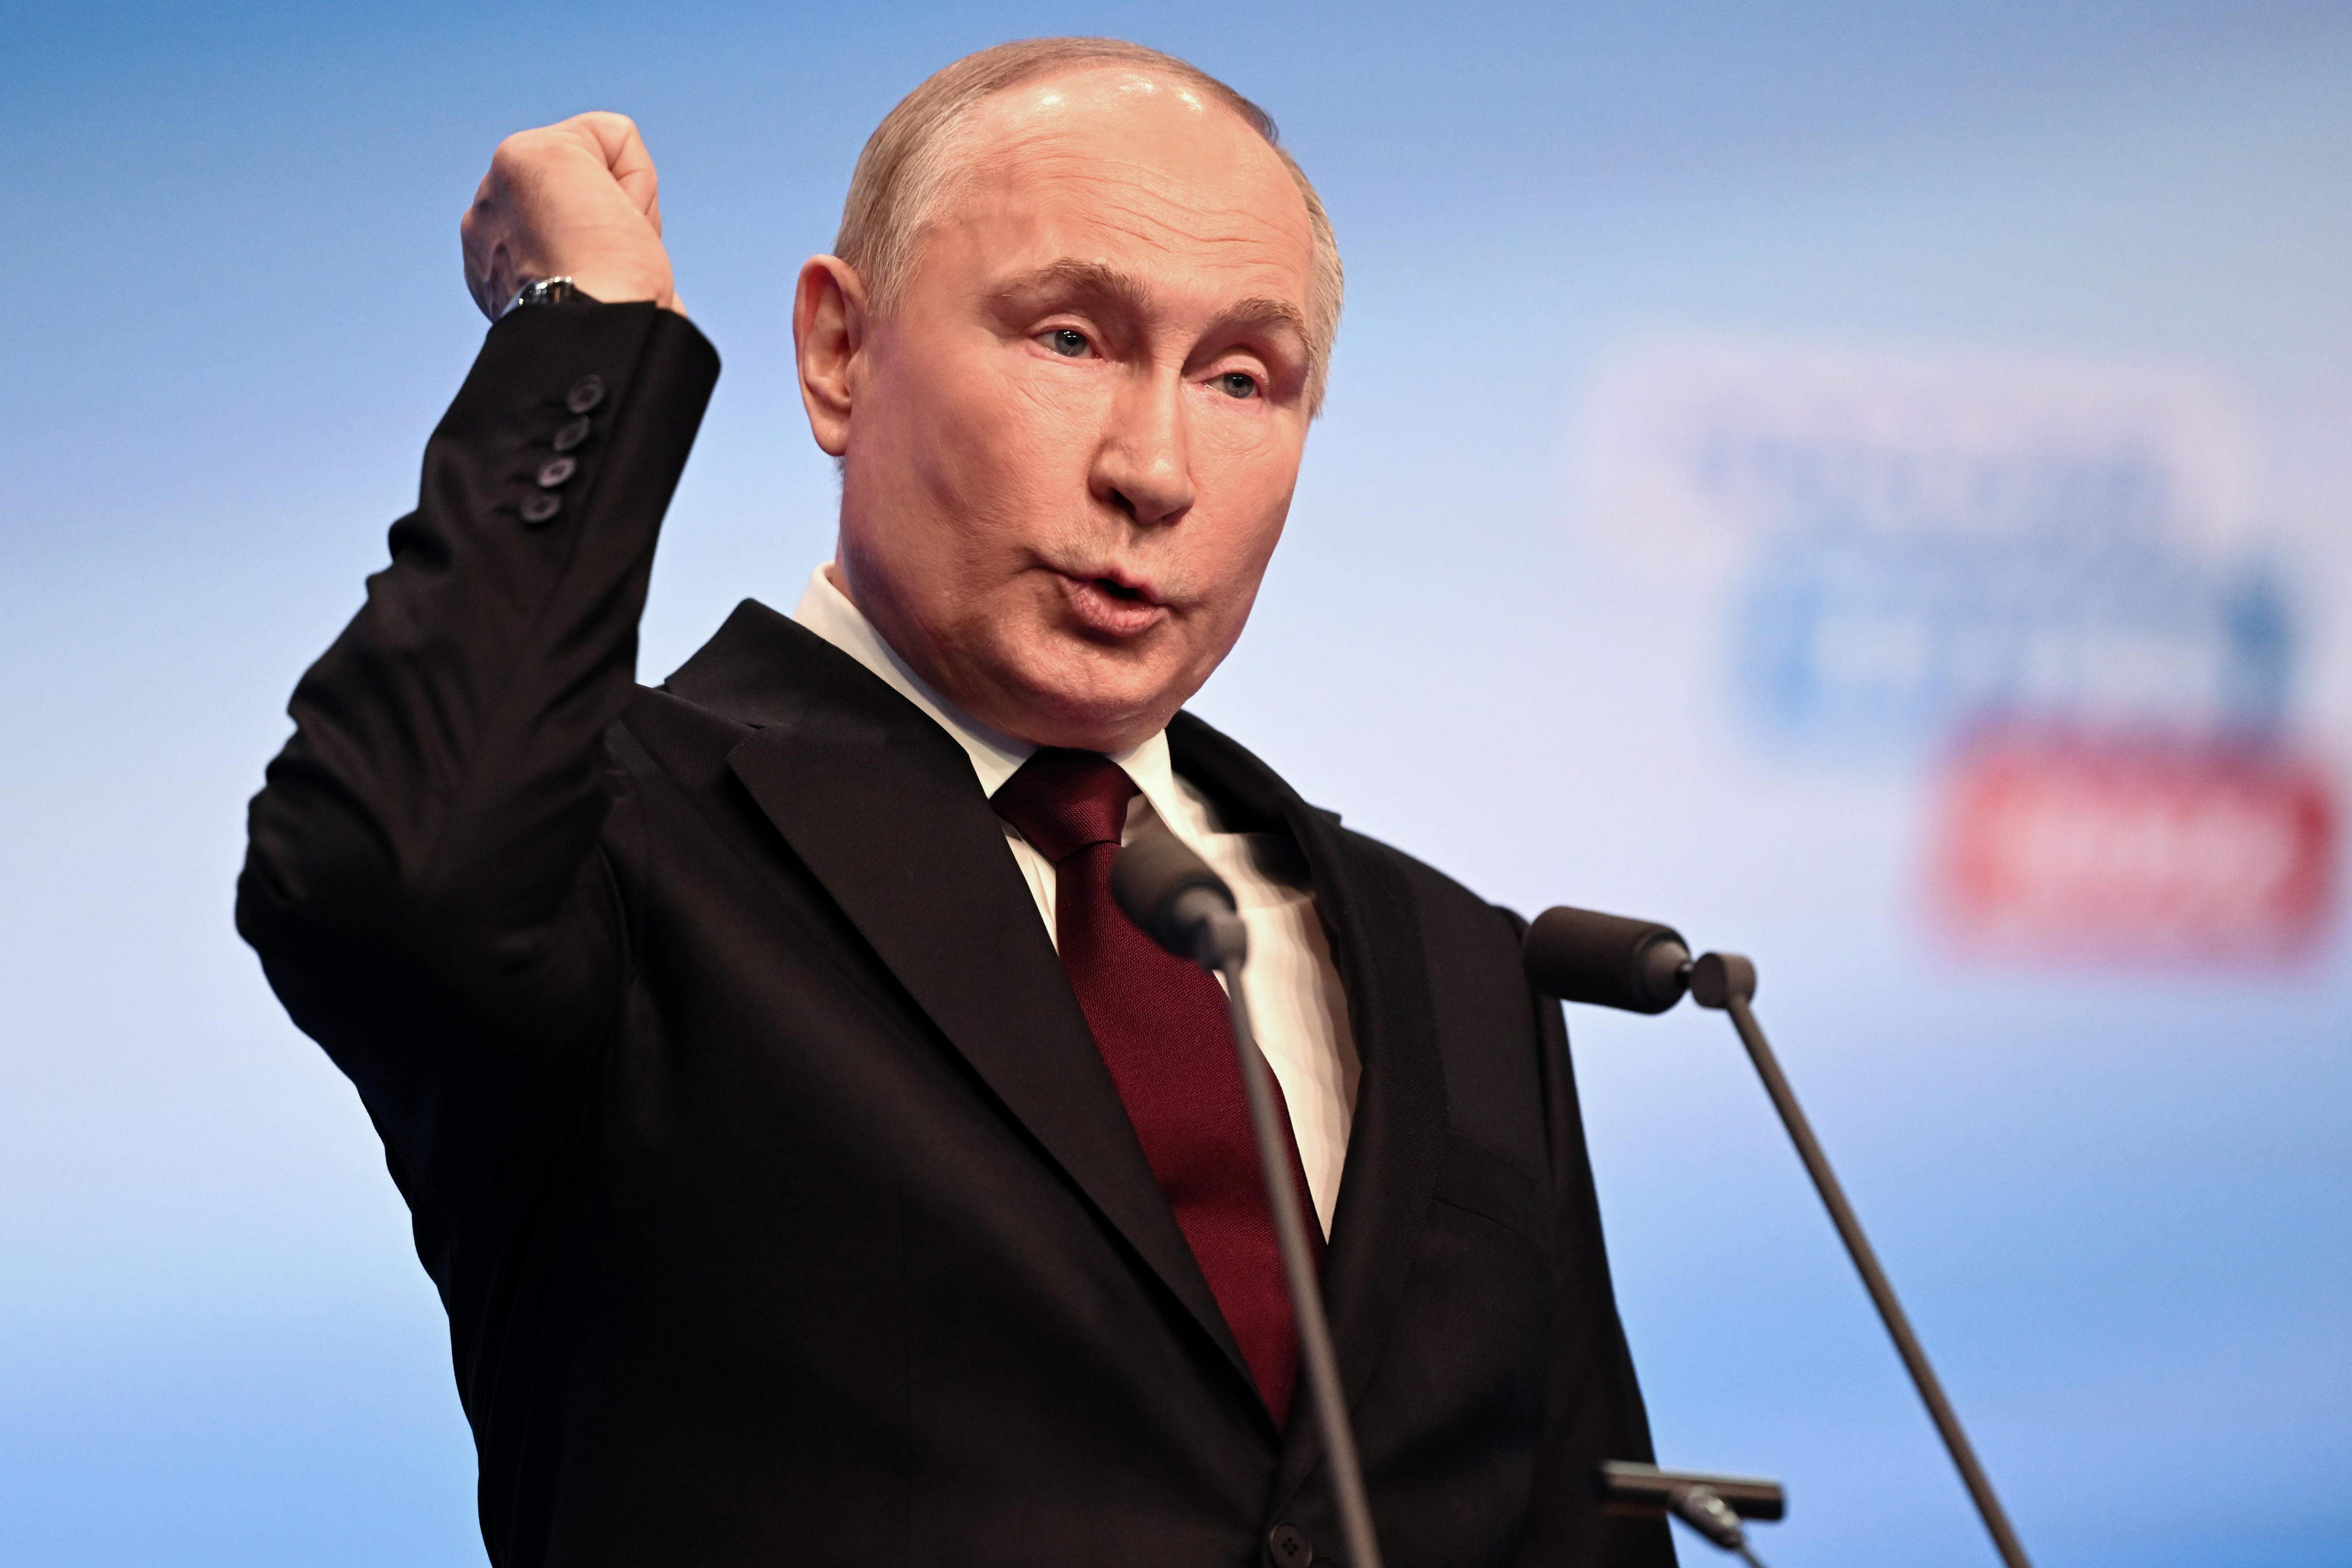 Cop d'efecte de Putin als territoris ocupats: el bany de masses que buscava el Kremlin